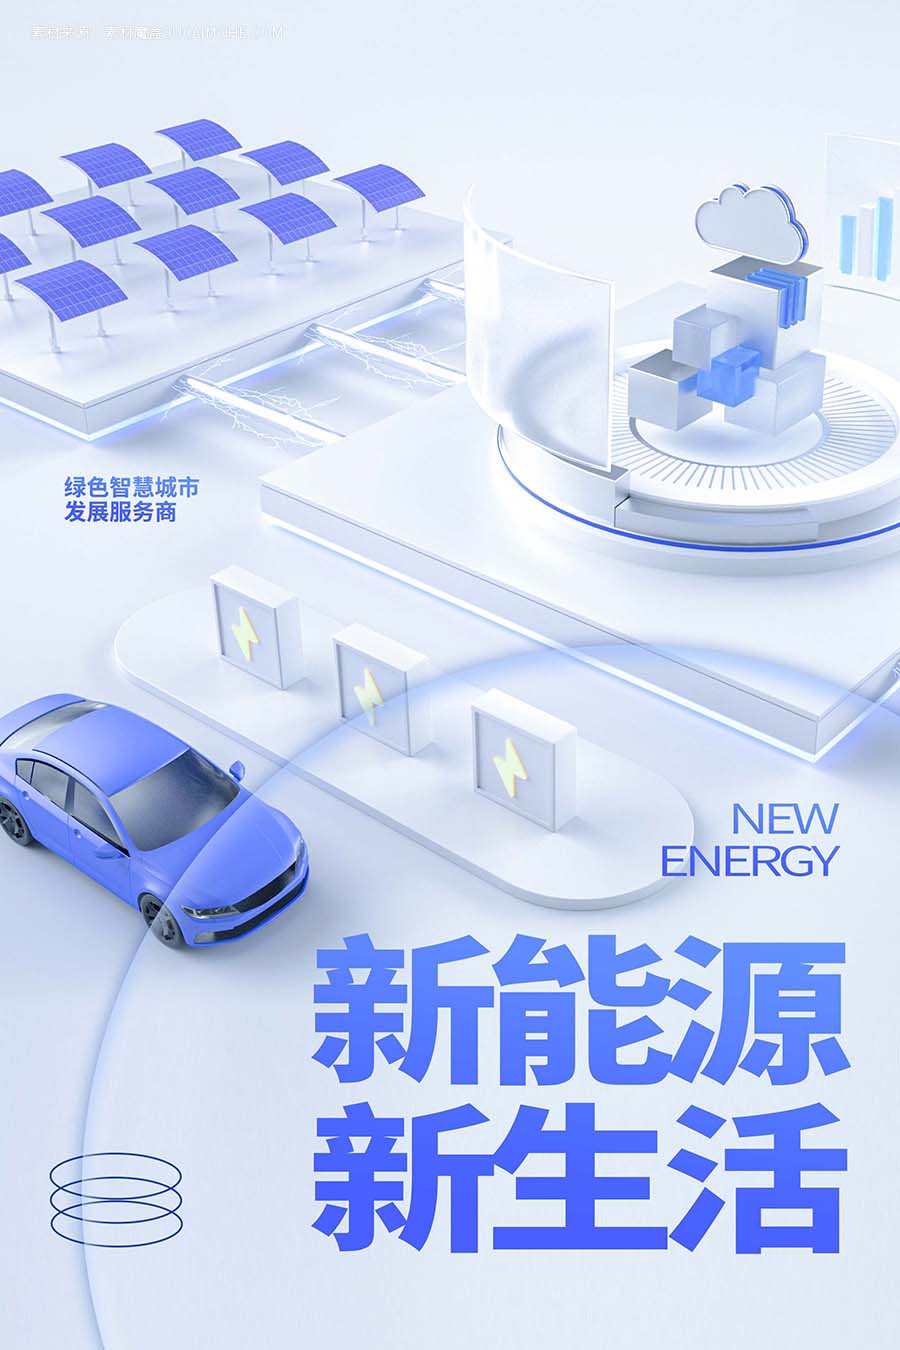 玻璃风新能源新生活汽车创意宣传海报